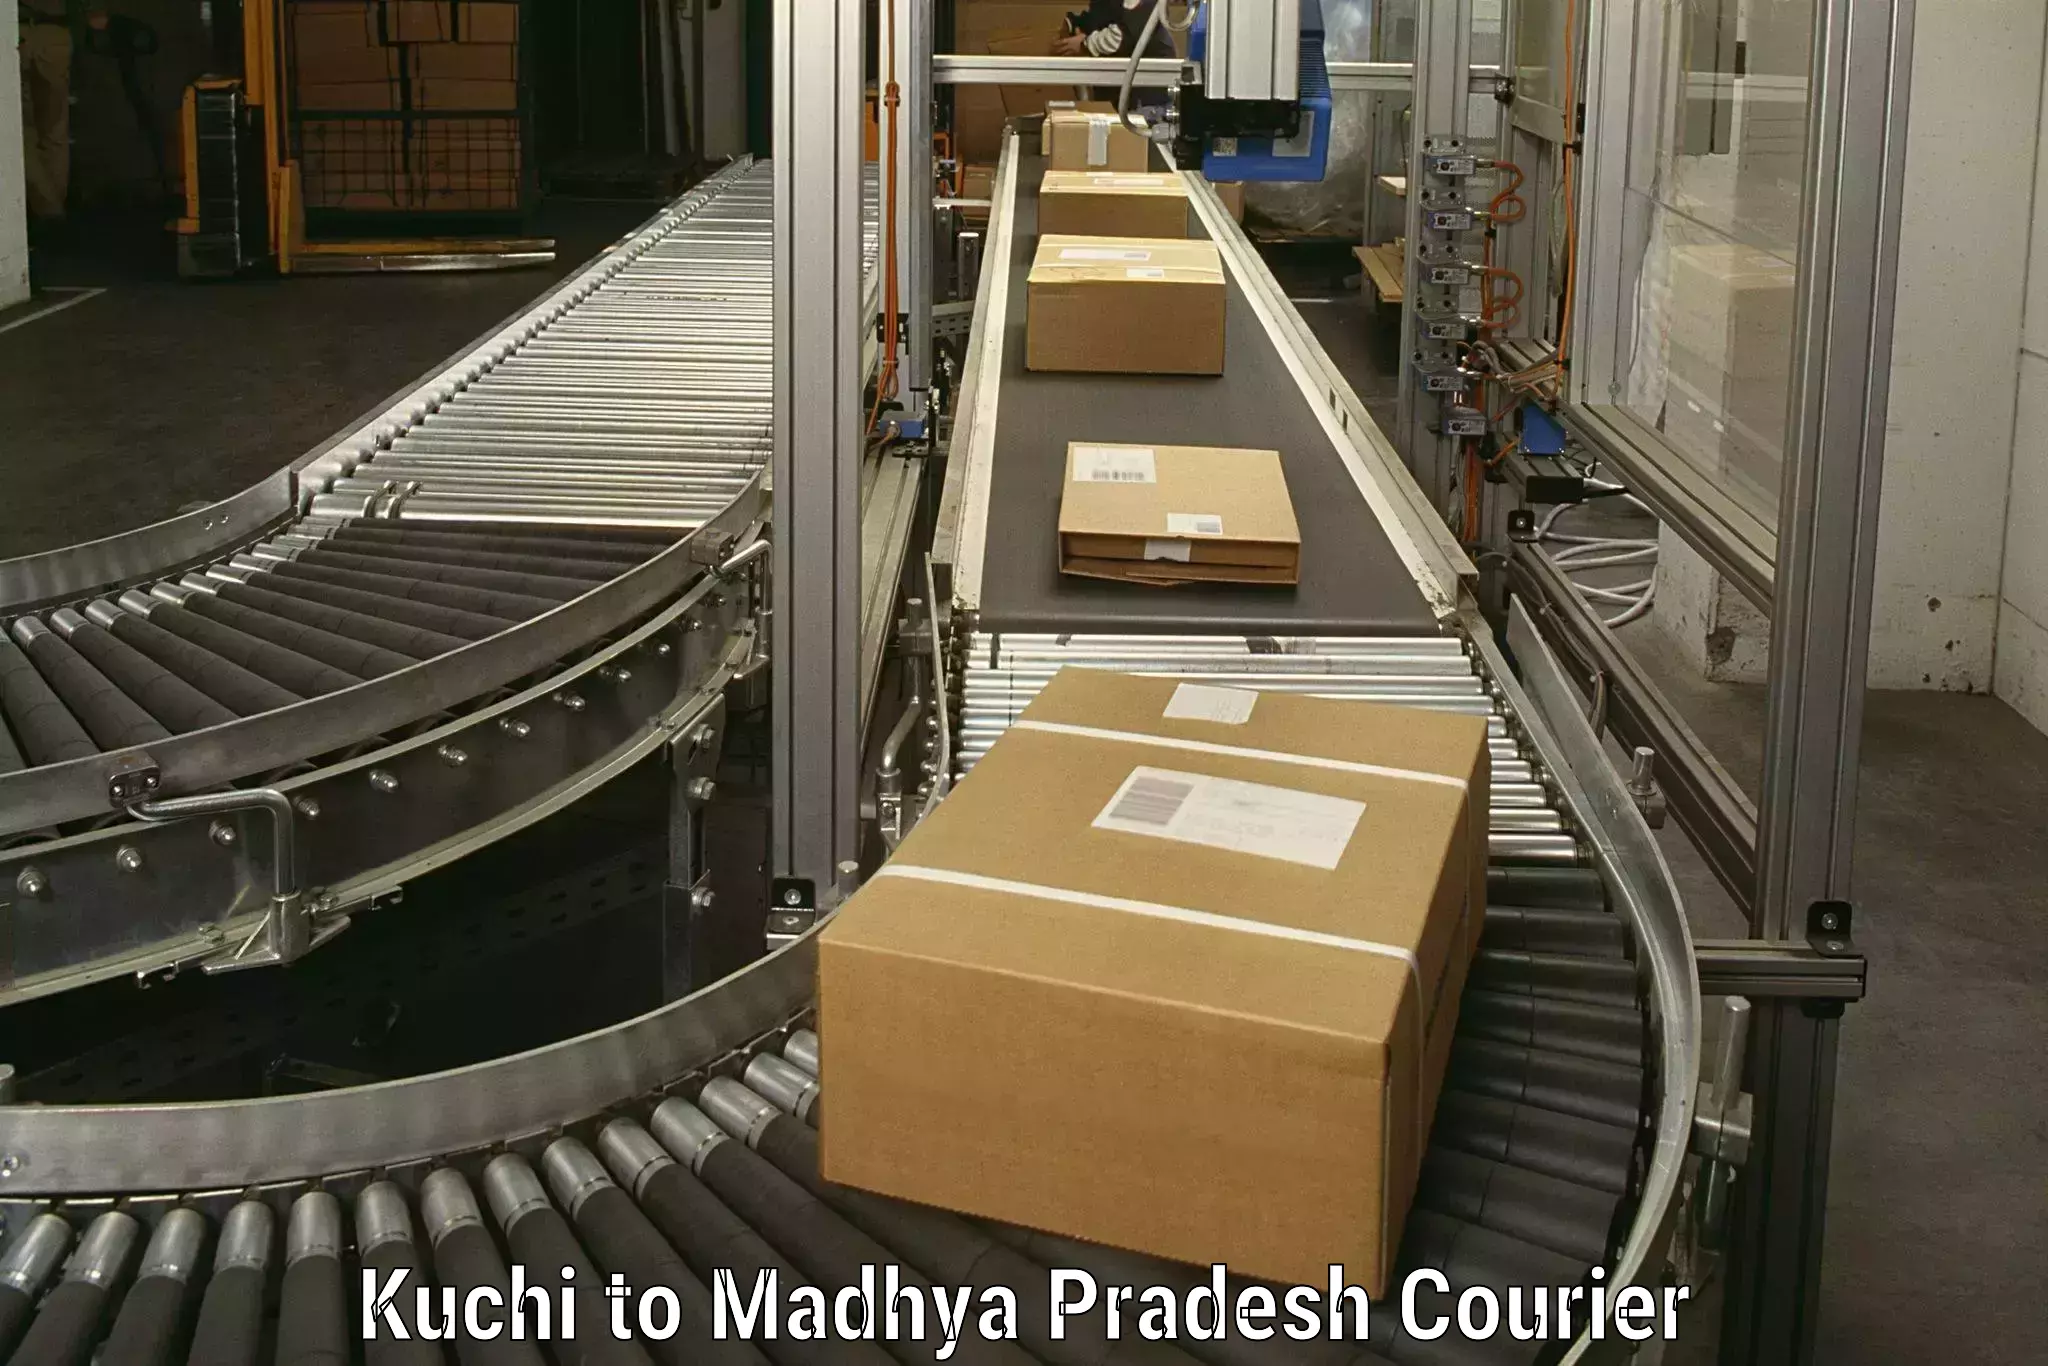 Quality moving company Kuchi to Jabalpur